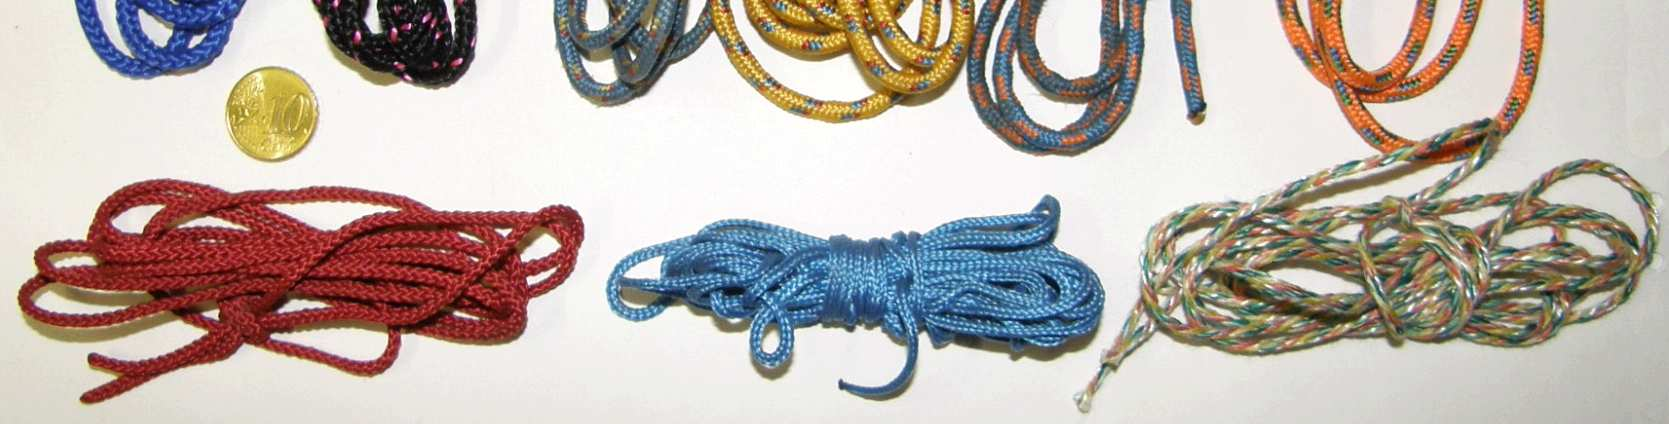 6.4 Reepschnüre Reepschnüre sind keine Seile und dürfen nicht zum Sichern verwendet werden, auch wenn dickere Reepschnüre sich äußerlich kaum von dünnen Seilen unterscheiden.